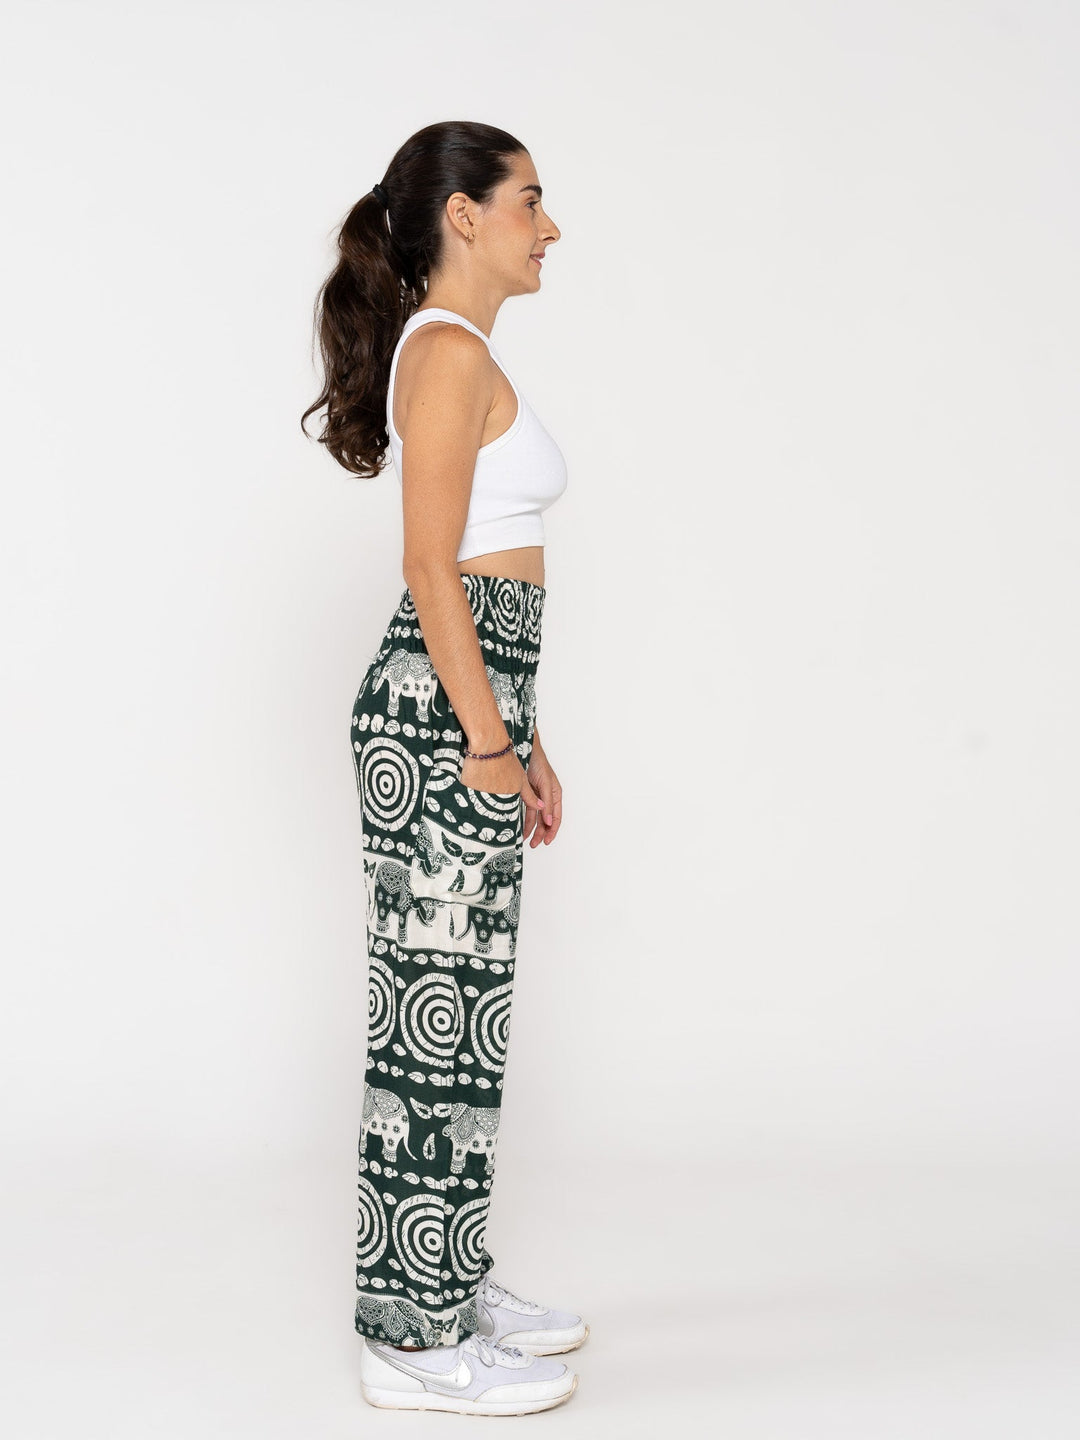 Padma Verde Oscuro - Pantsforlove Pantalones anchos, pantalones yoga